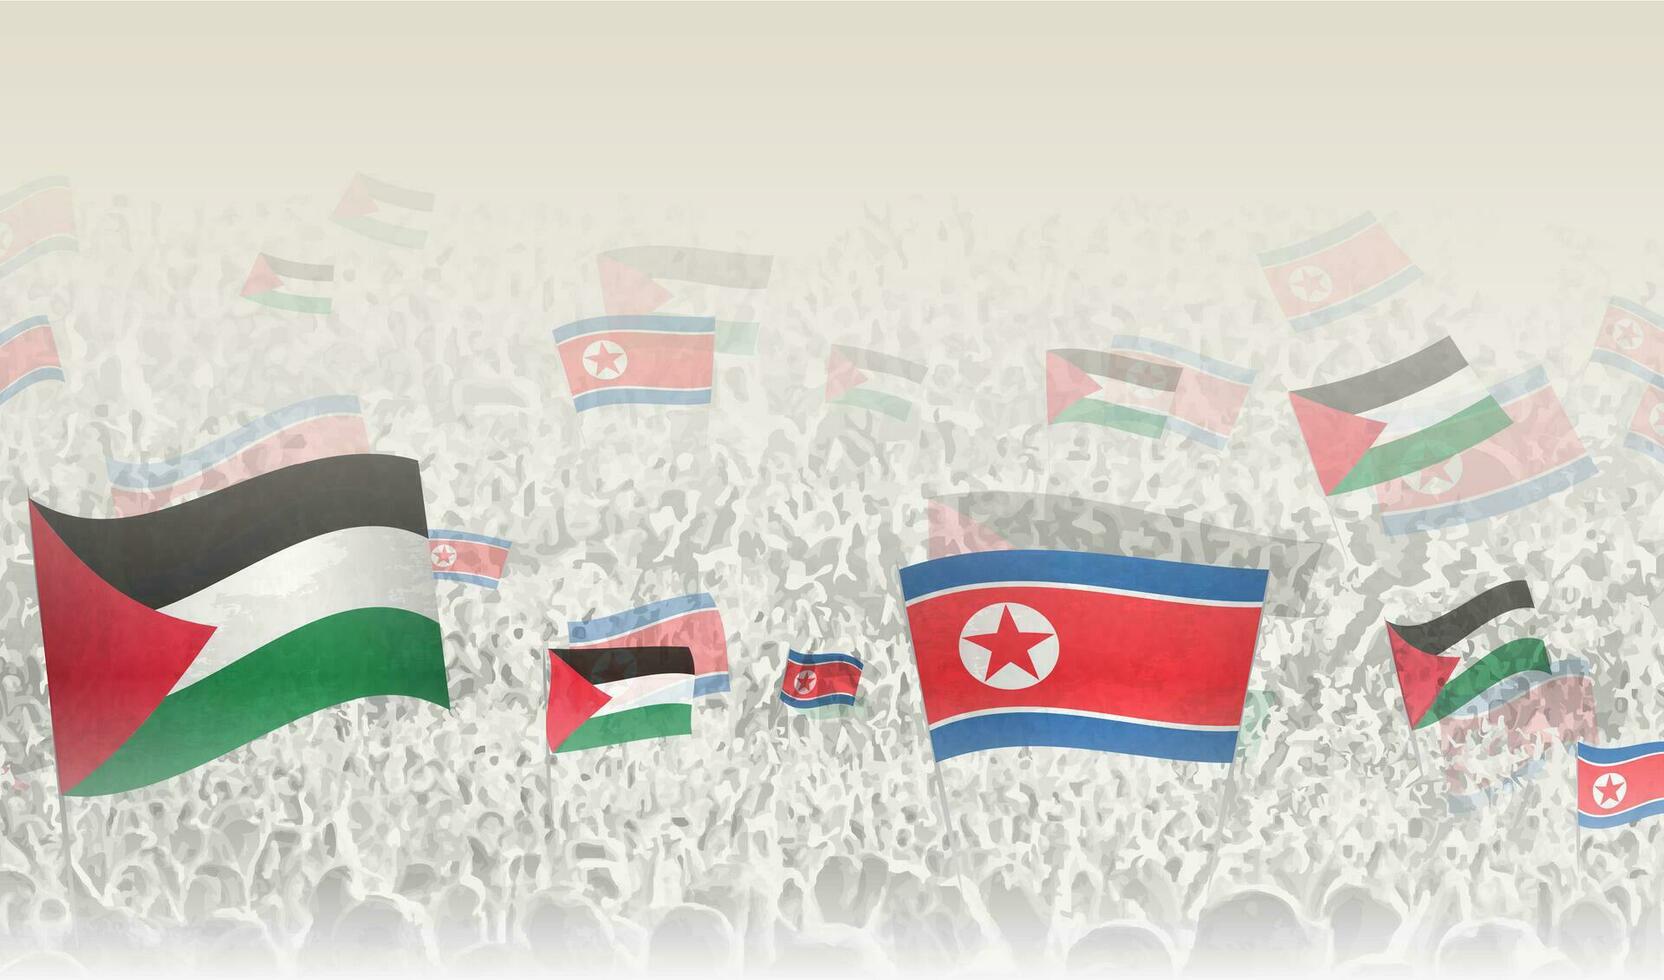 Palestine et Nord Corée drapeaux dans une foule de applaudissement personnes. vecteur